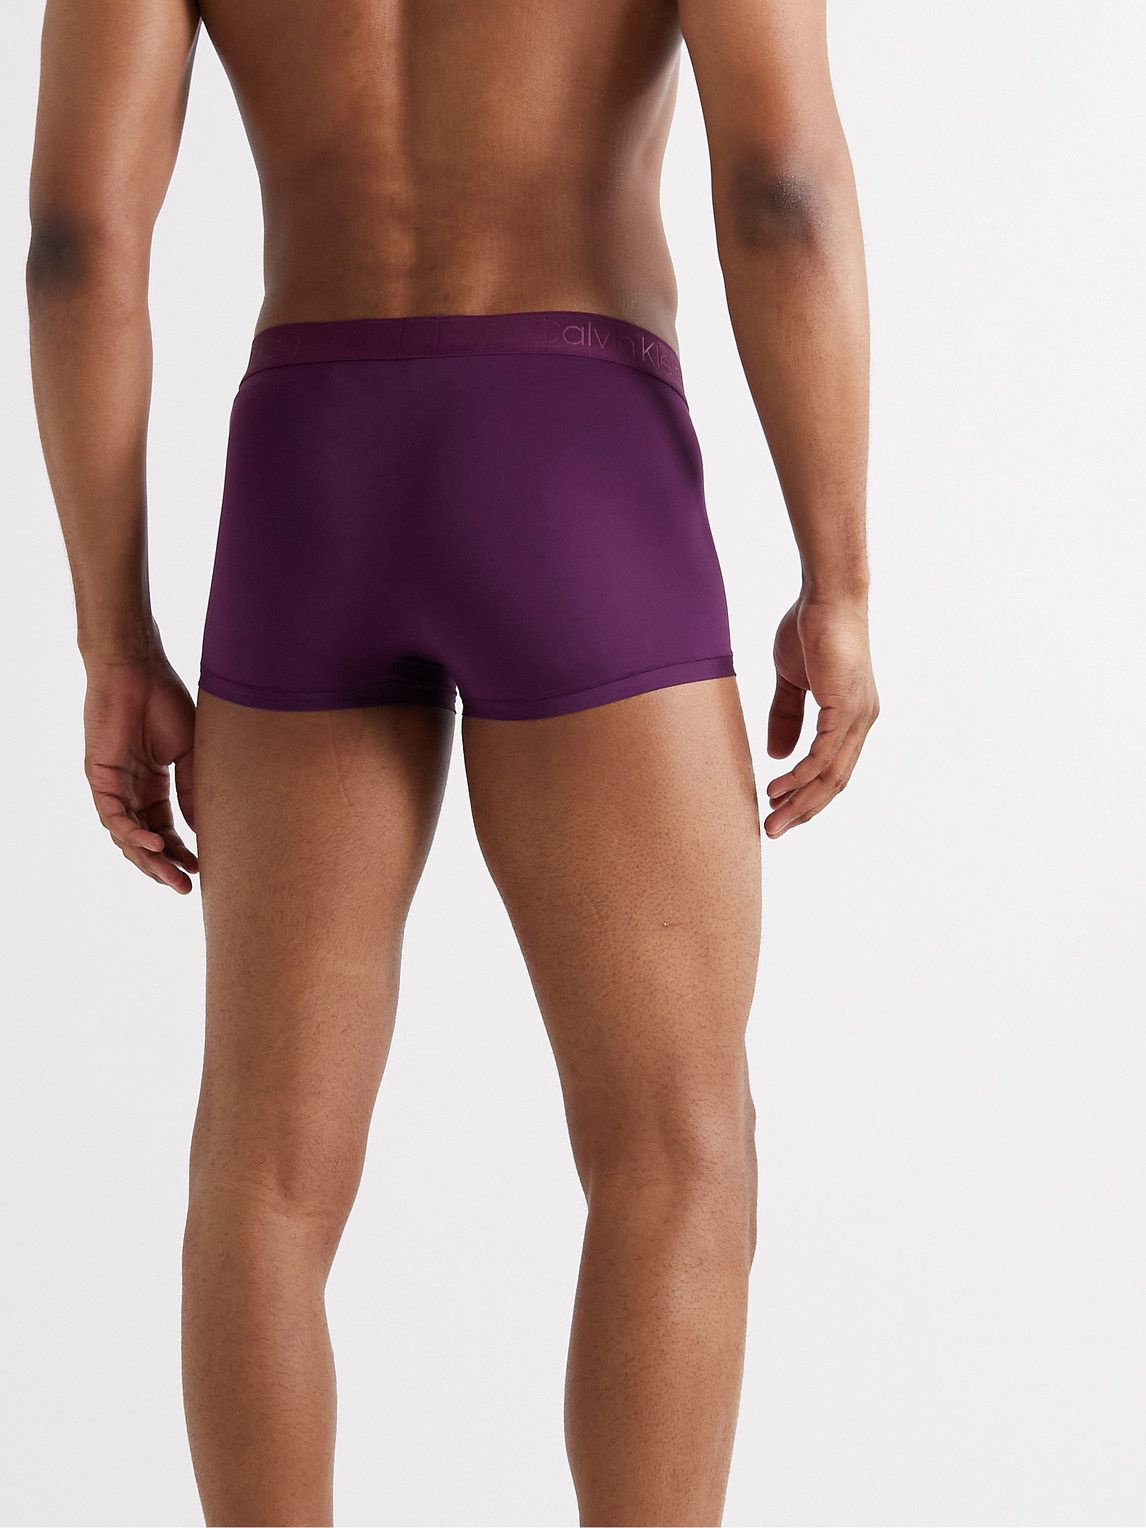 Calvin Klein Underwear - Stretch-Jersey Boxer Briefs - Purple Calvin Klein  Underwear